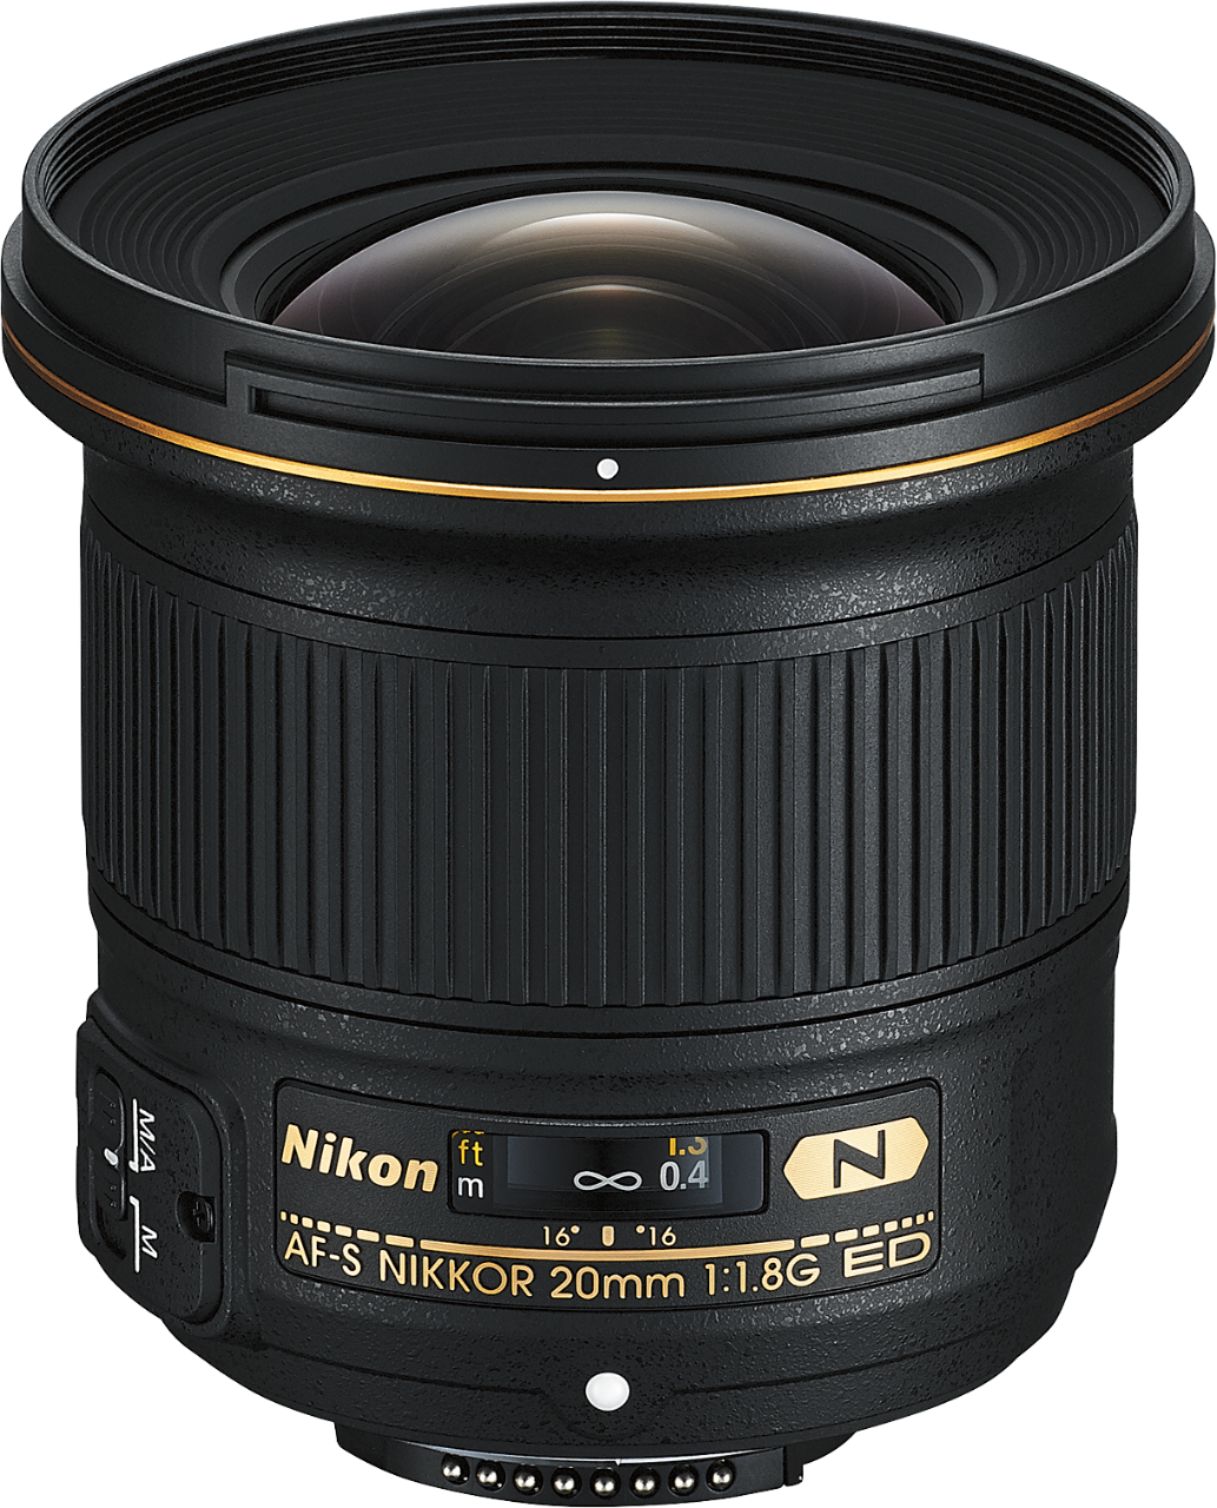 Best Buy: Nikon D850 DSLR Camera with AF-S NIKKOR 20mm, 35mm and 